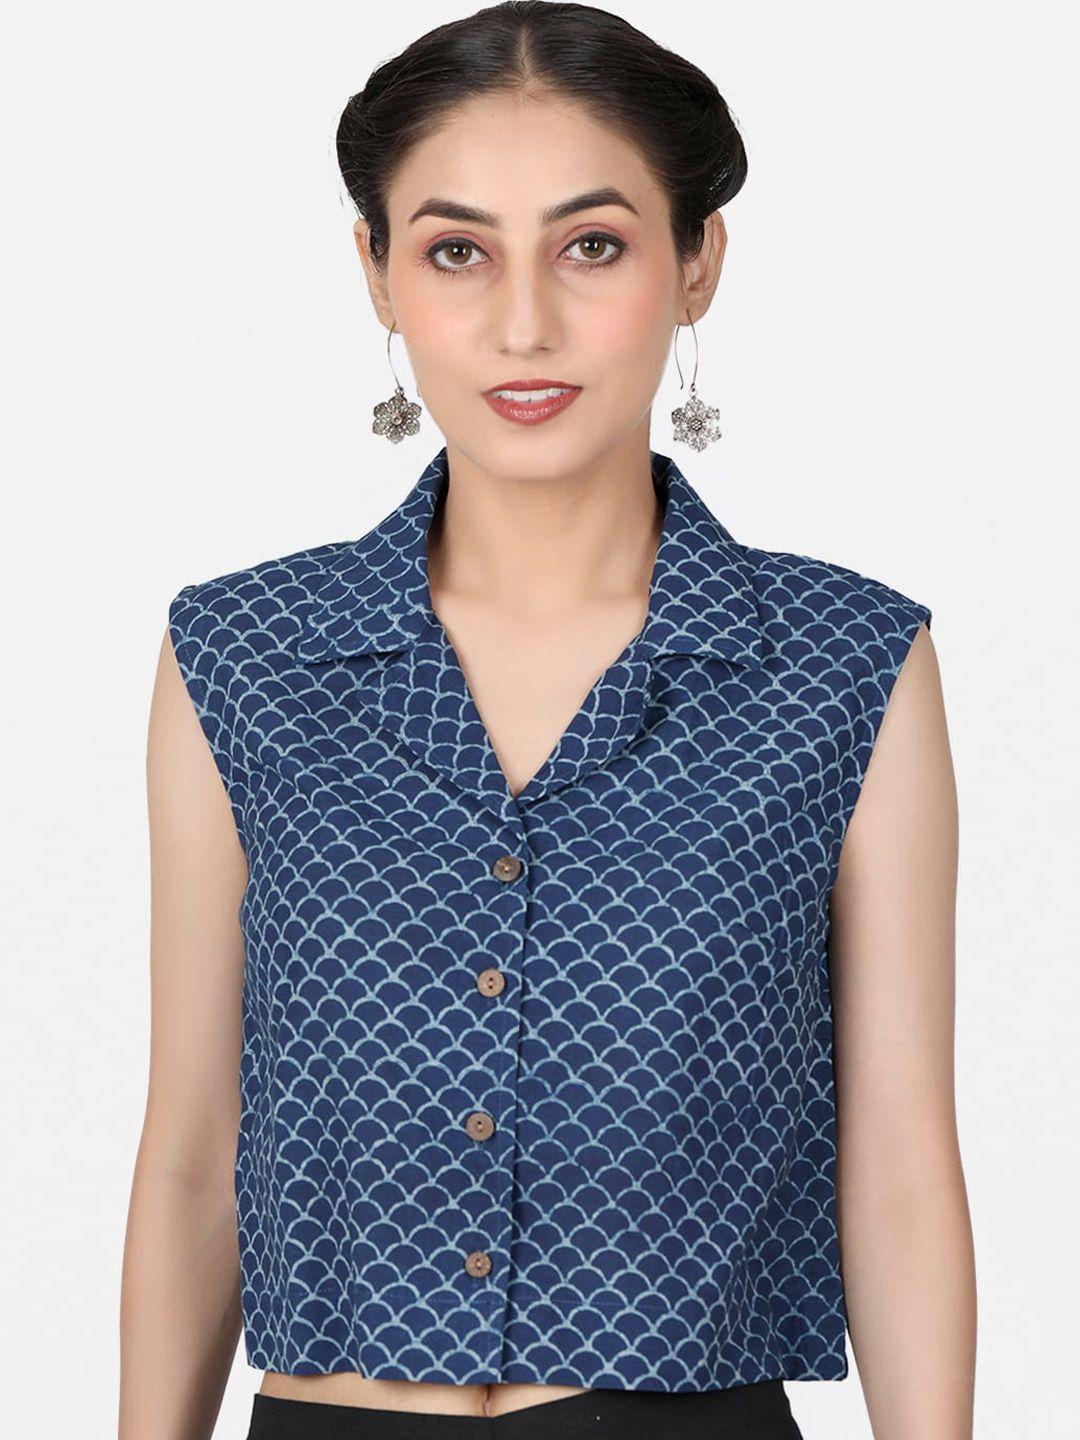 llajja block printed shirt collar cotton saree blouse